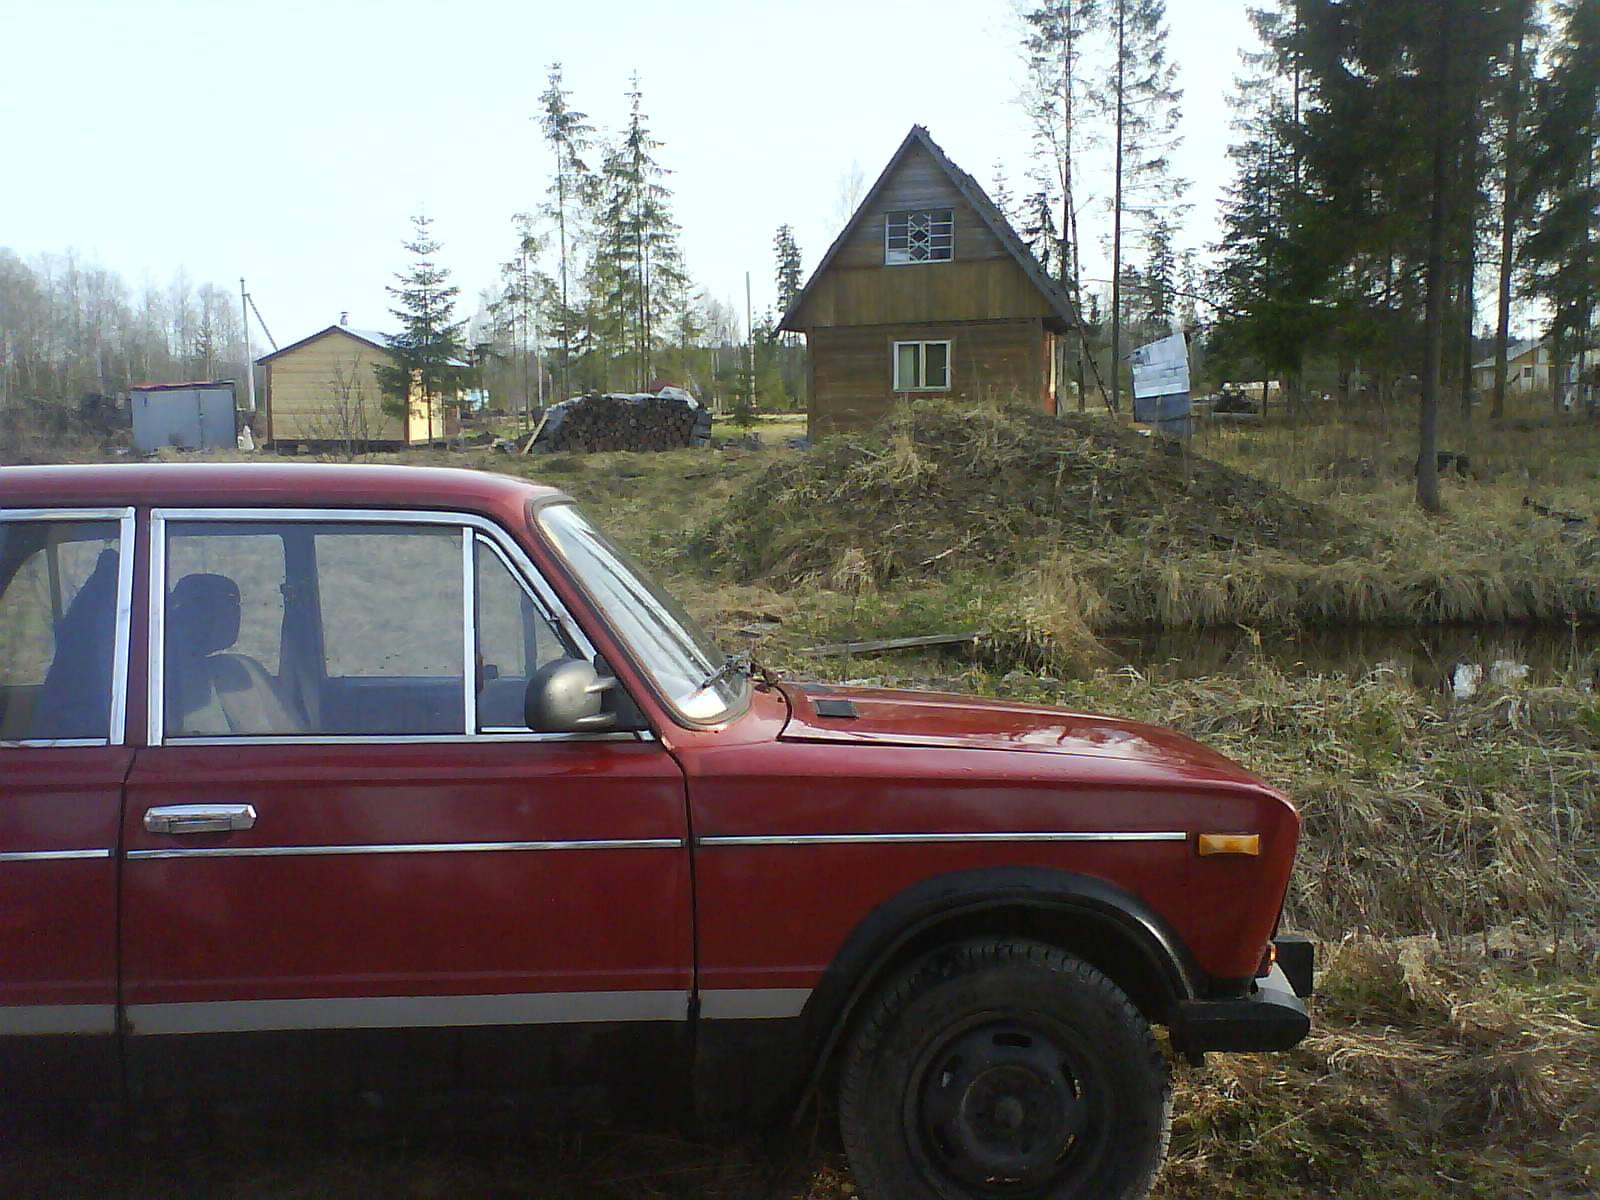 Купить легковой автомобиль бу свердловская область. Аукцион авто Свердловская область.